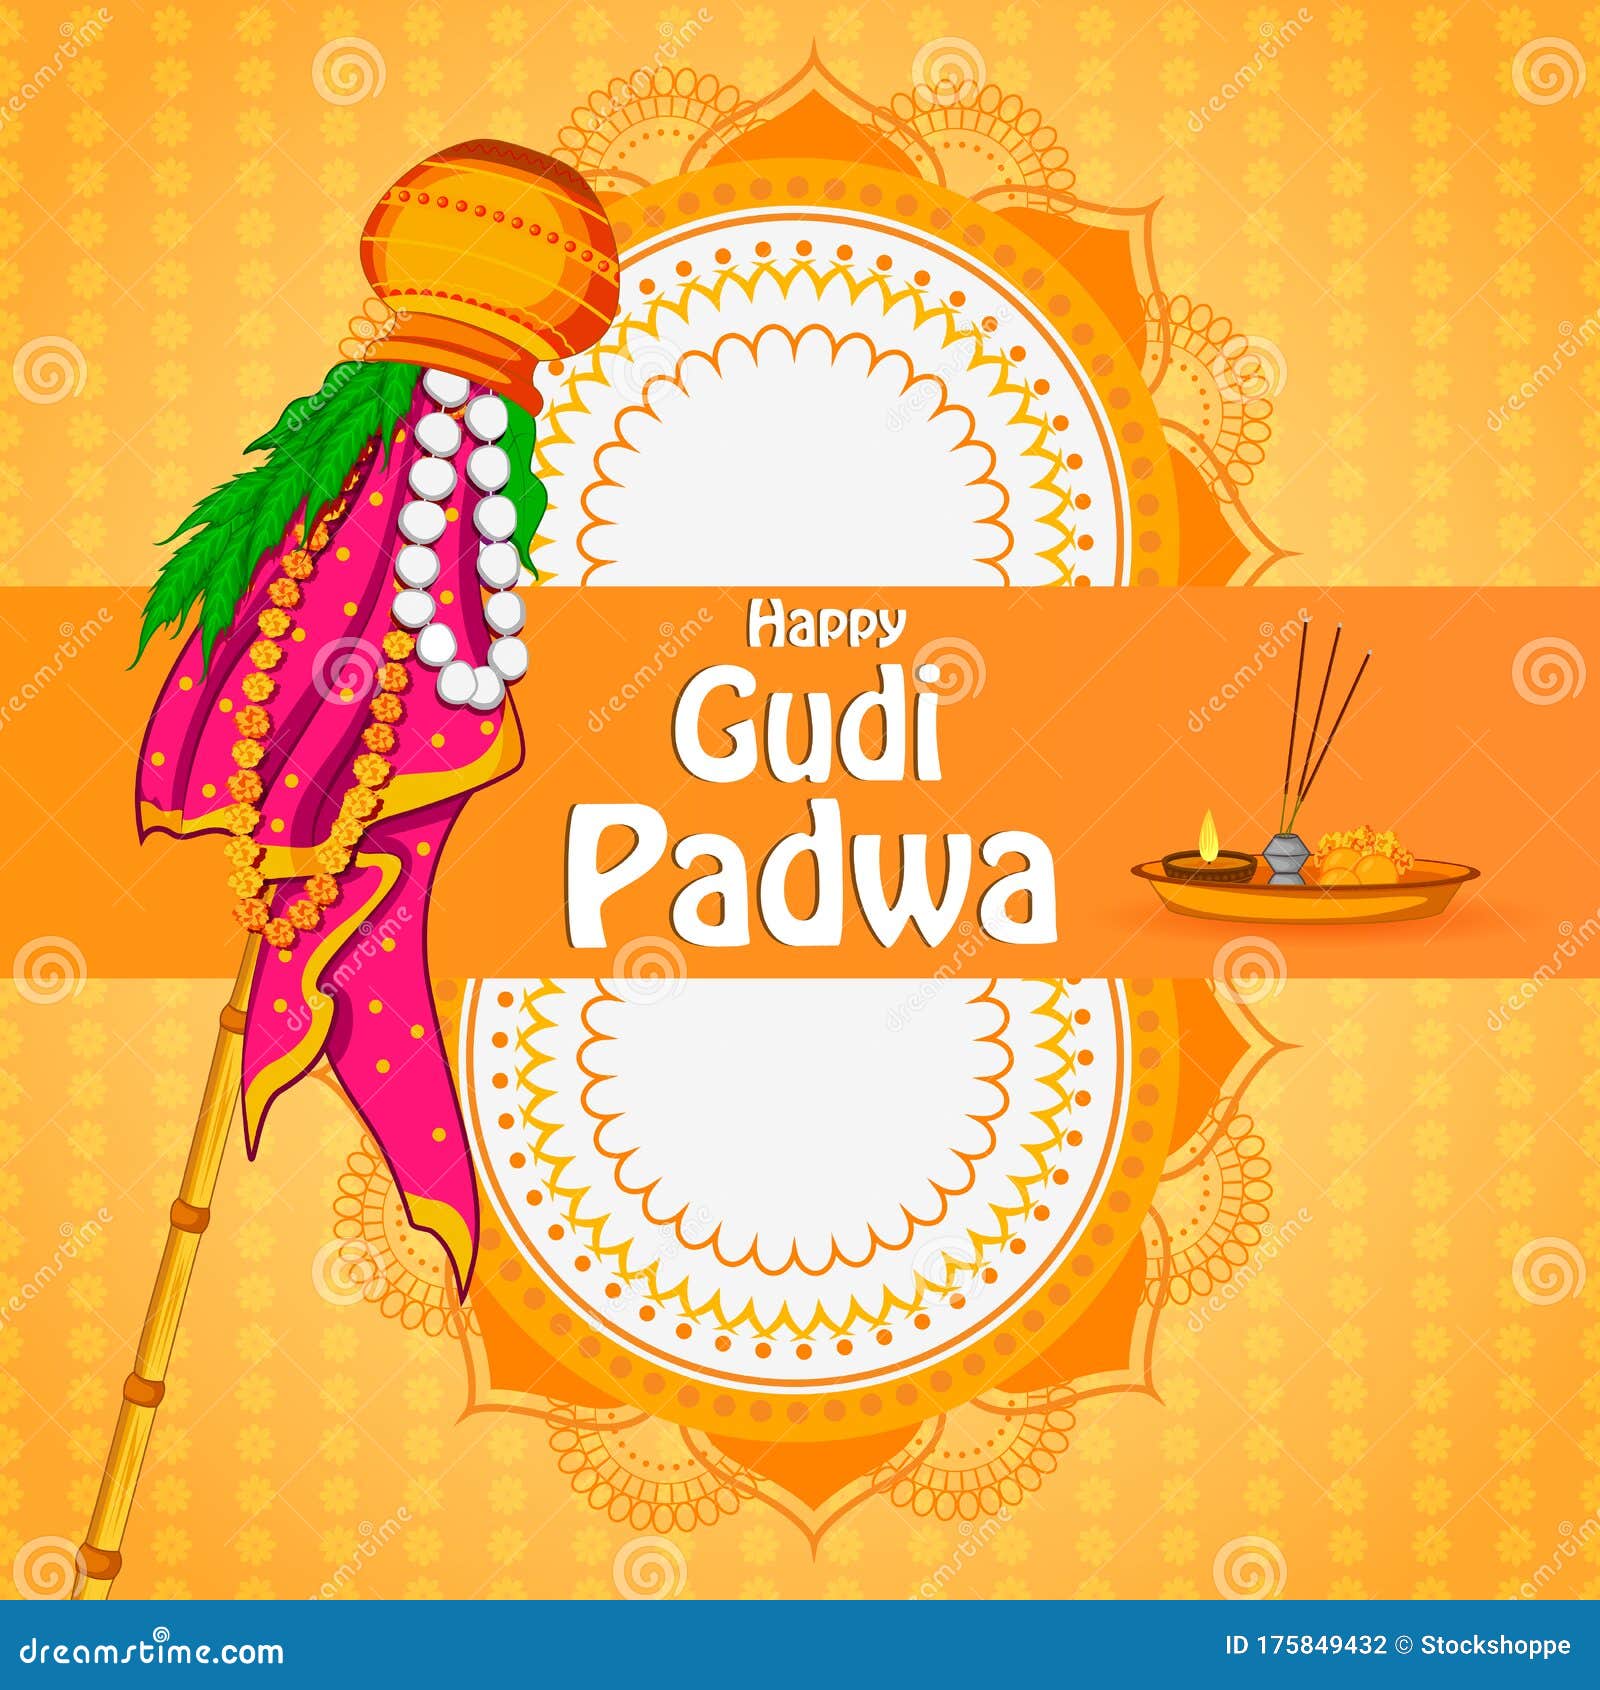 gudi padwa holiday religious festival background of maharashtra india